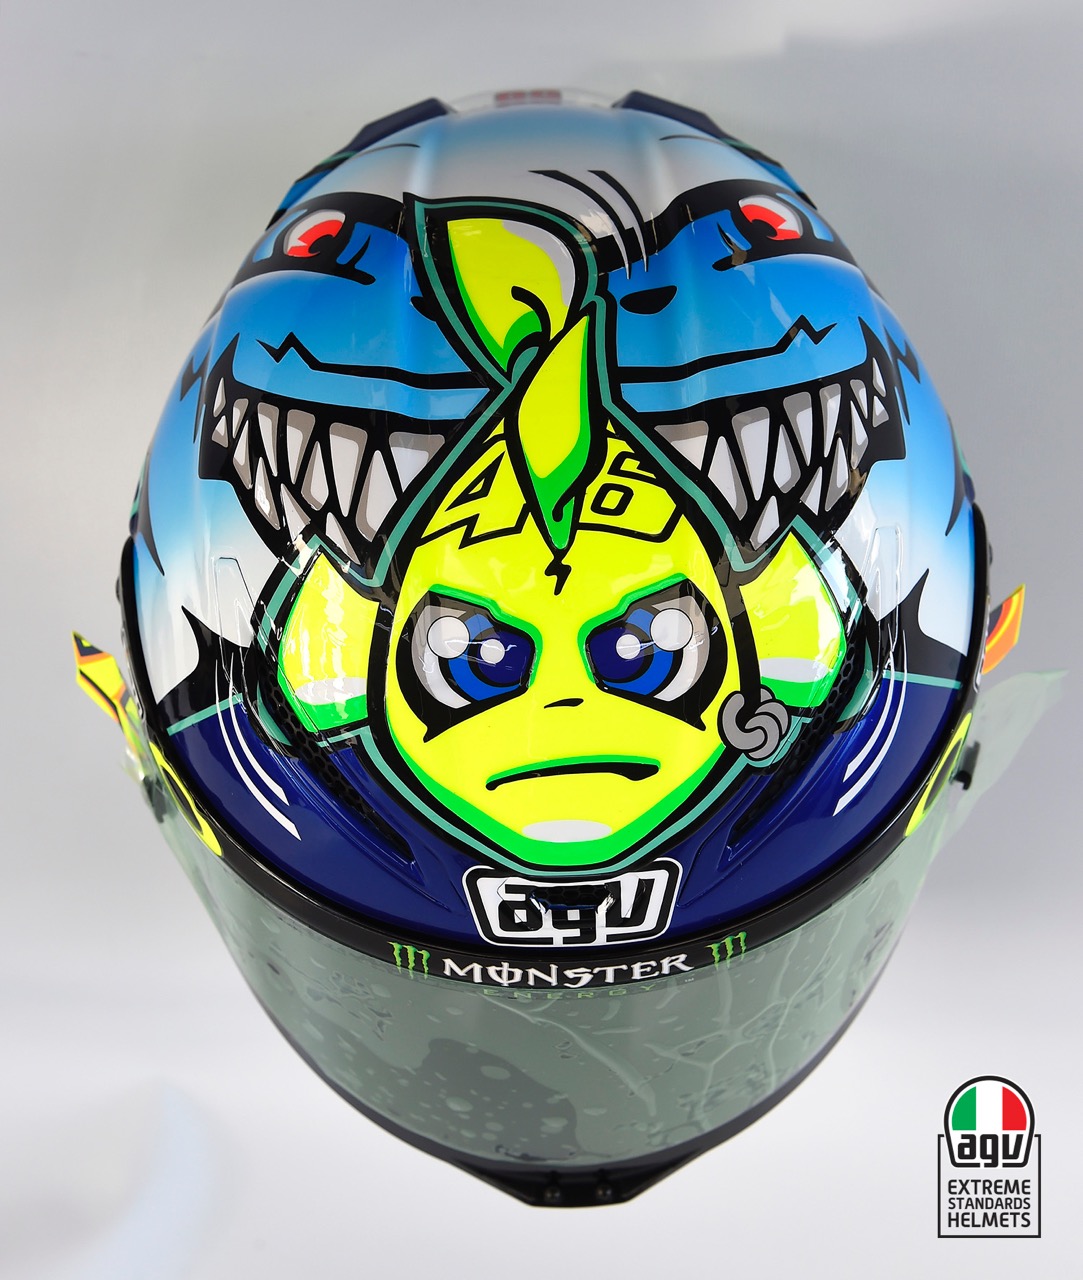 每年MotoGP賽季義大利Misano站Rossi都會推出特仕版塗裝，對廣大的猴迷們都有極強的吸引力。